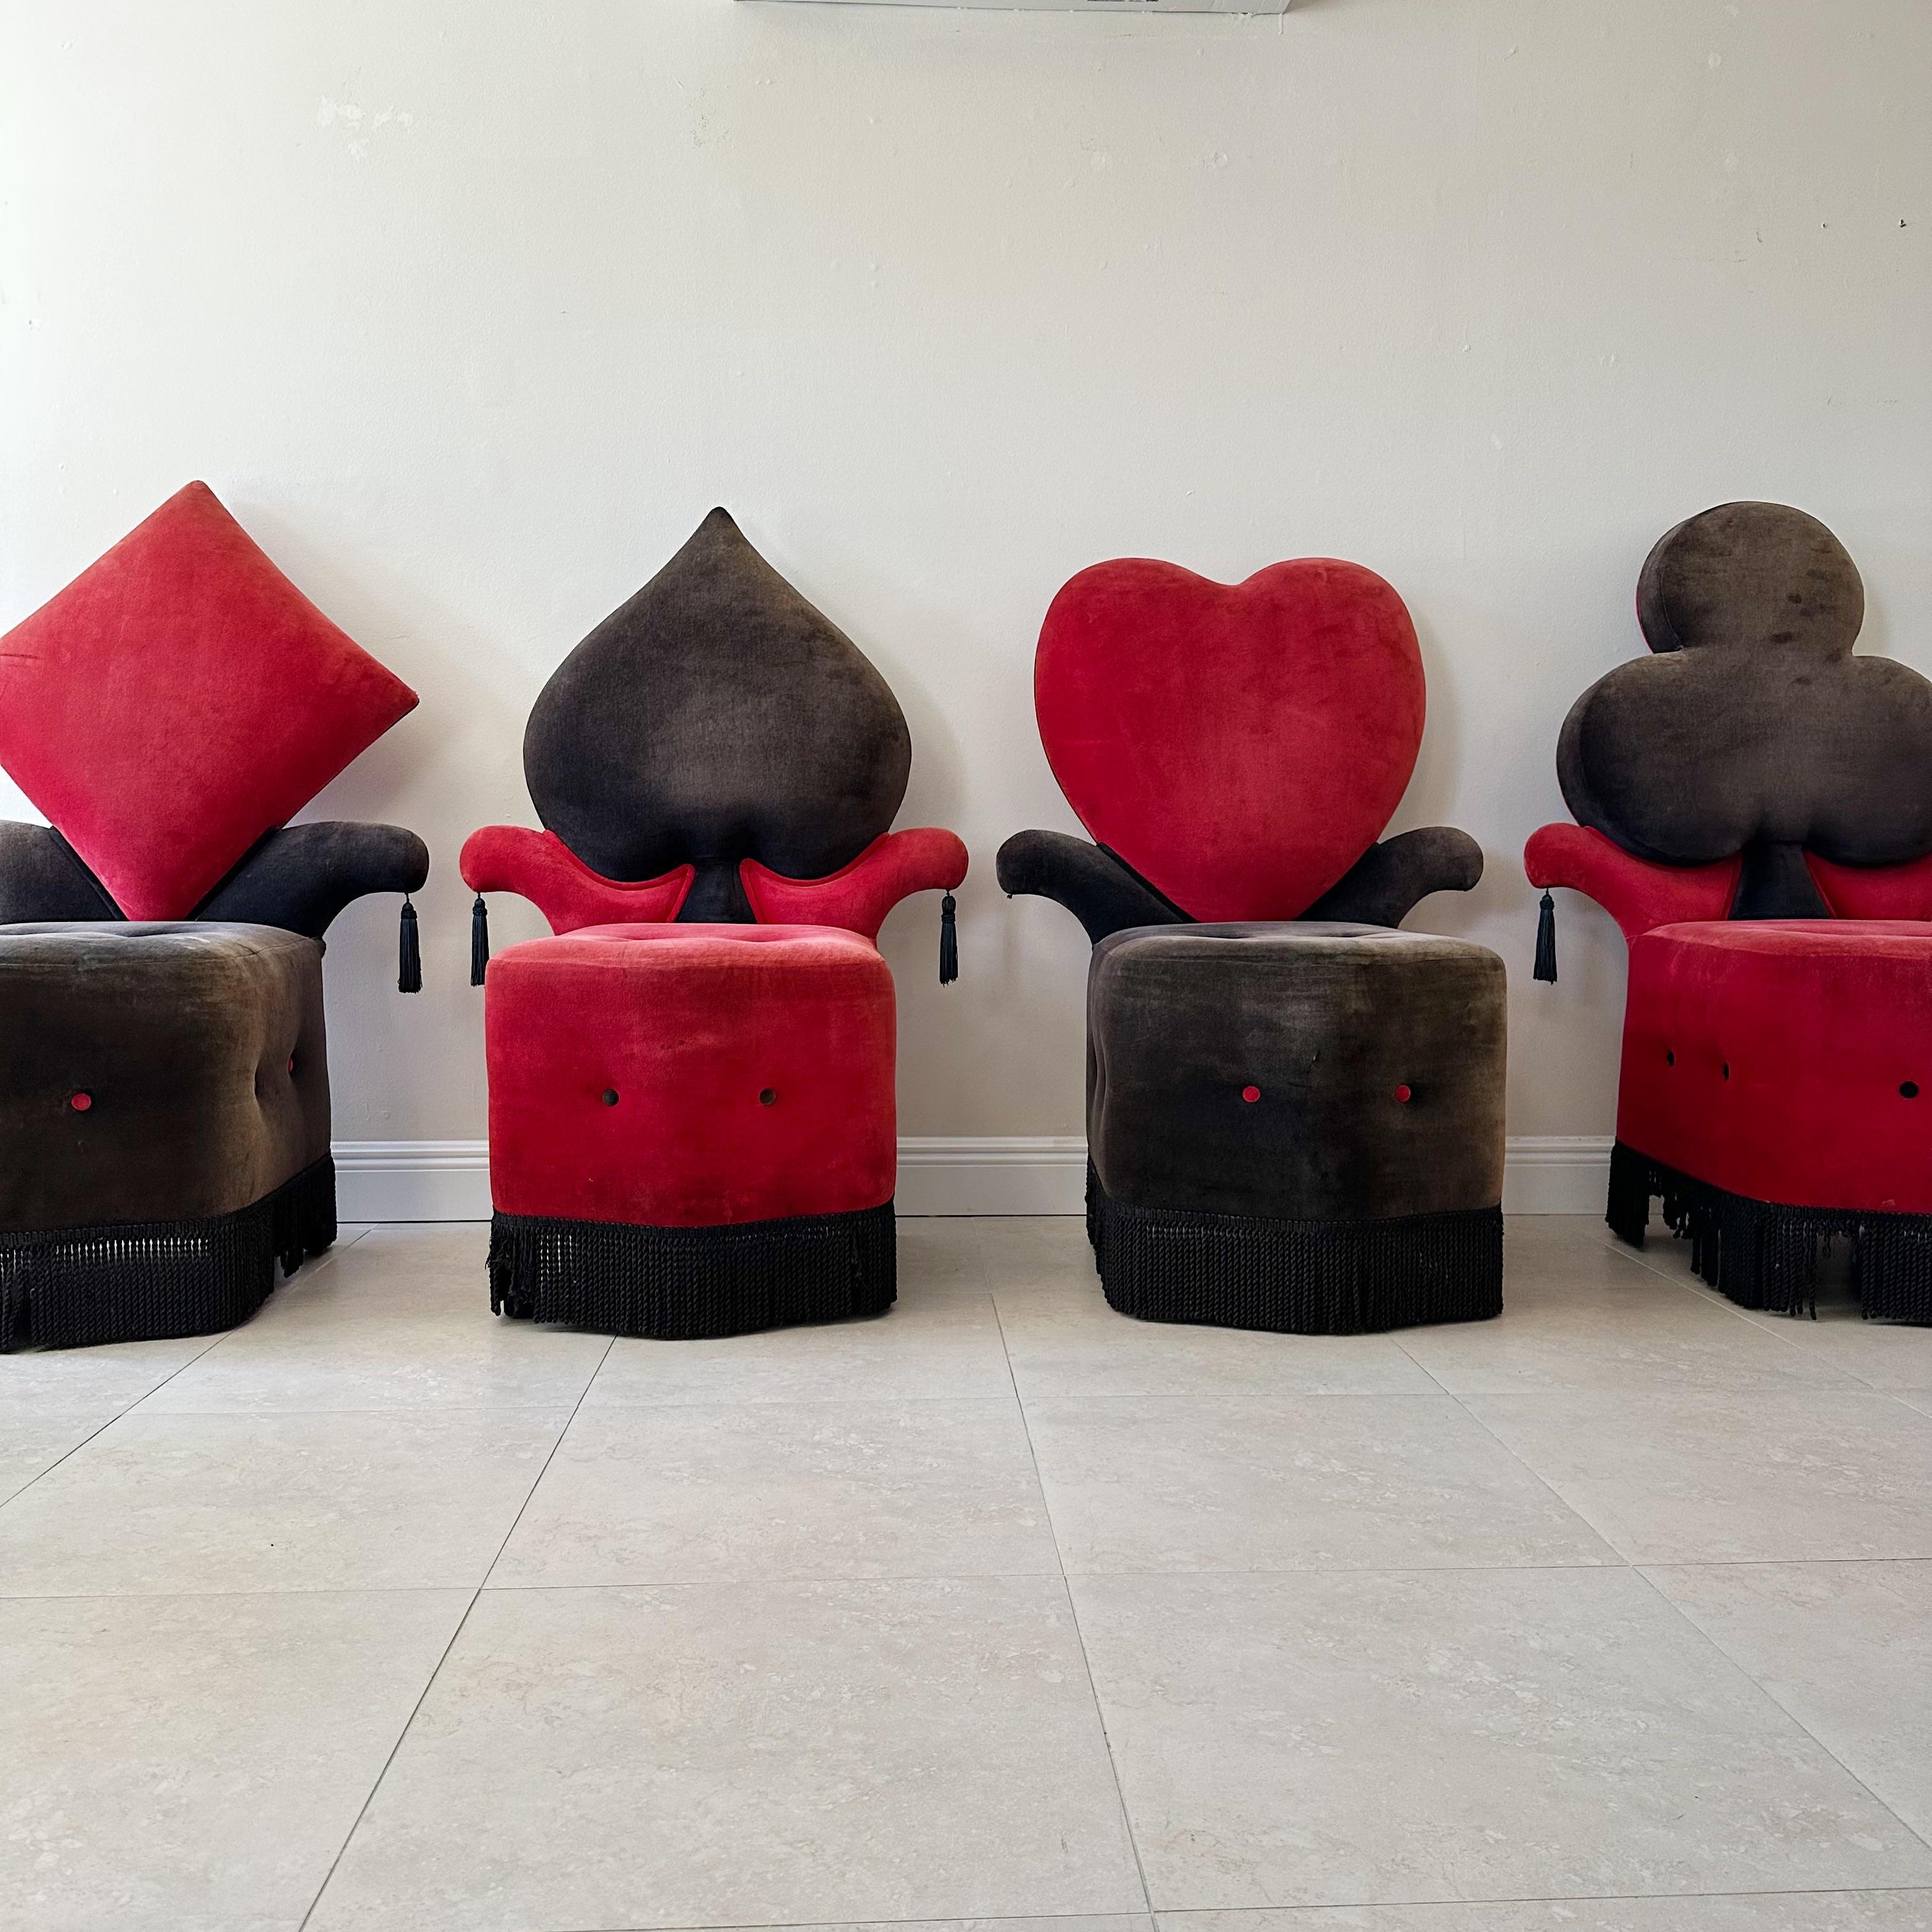 Dieses einzigartige Set von Stühlen wird Ihrer Einrichtung einen Hauch von Laune verleihen. Das Set umfasst vier Stühle, die jeweils einer der vier Spielkartenfarben Kreuz, Karo, Herz und Pik nachempfunden sind. Diese Vintage-Stühle sind mit